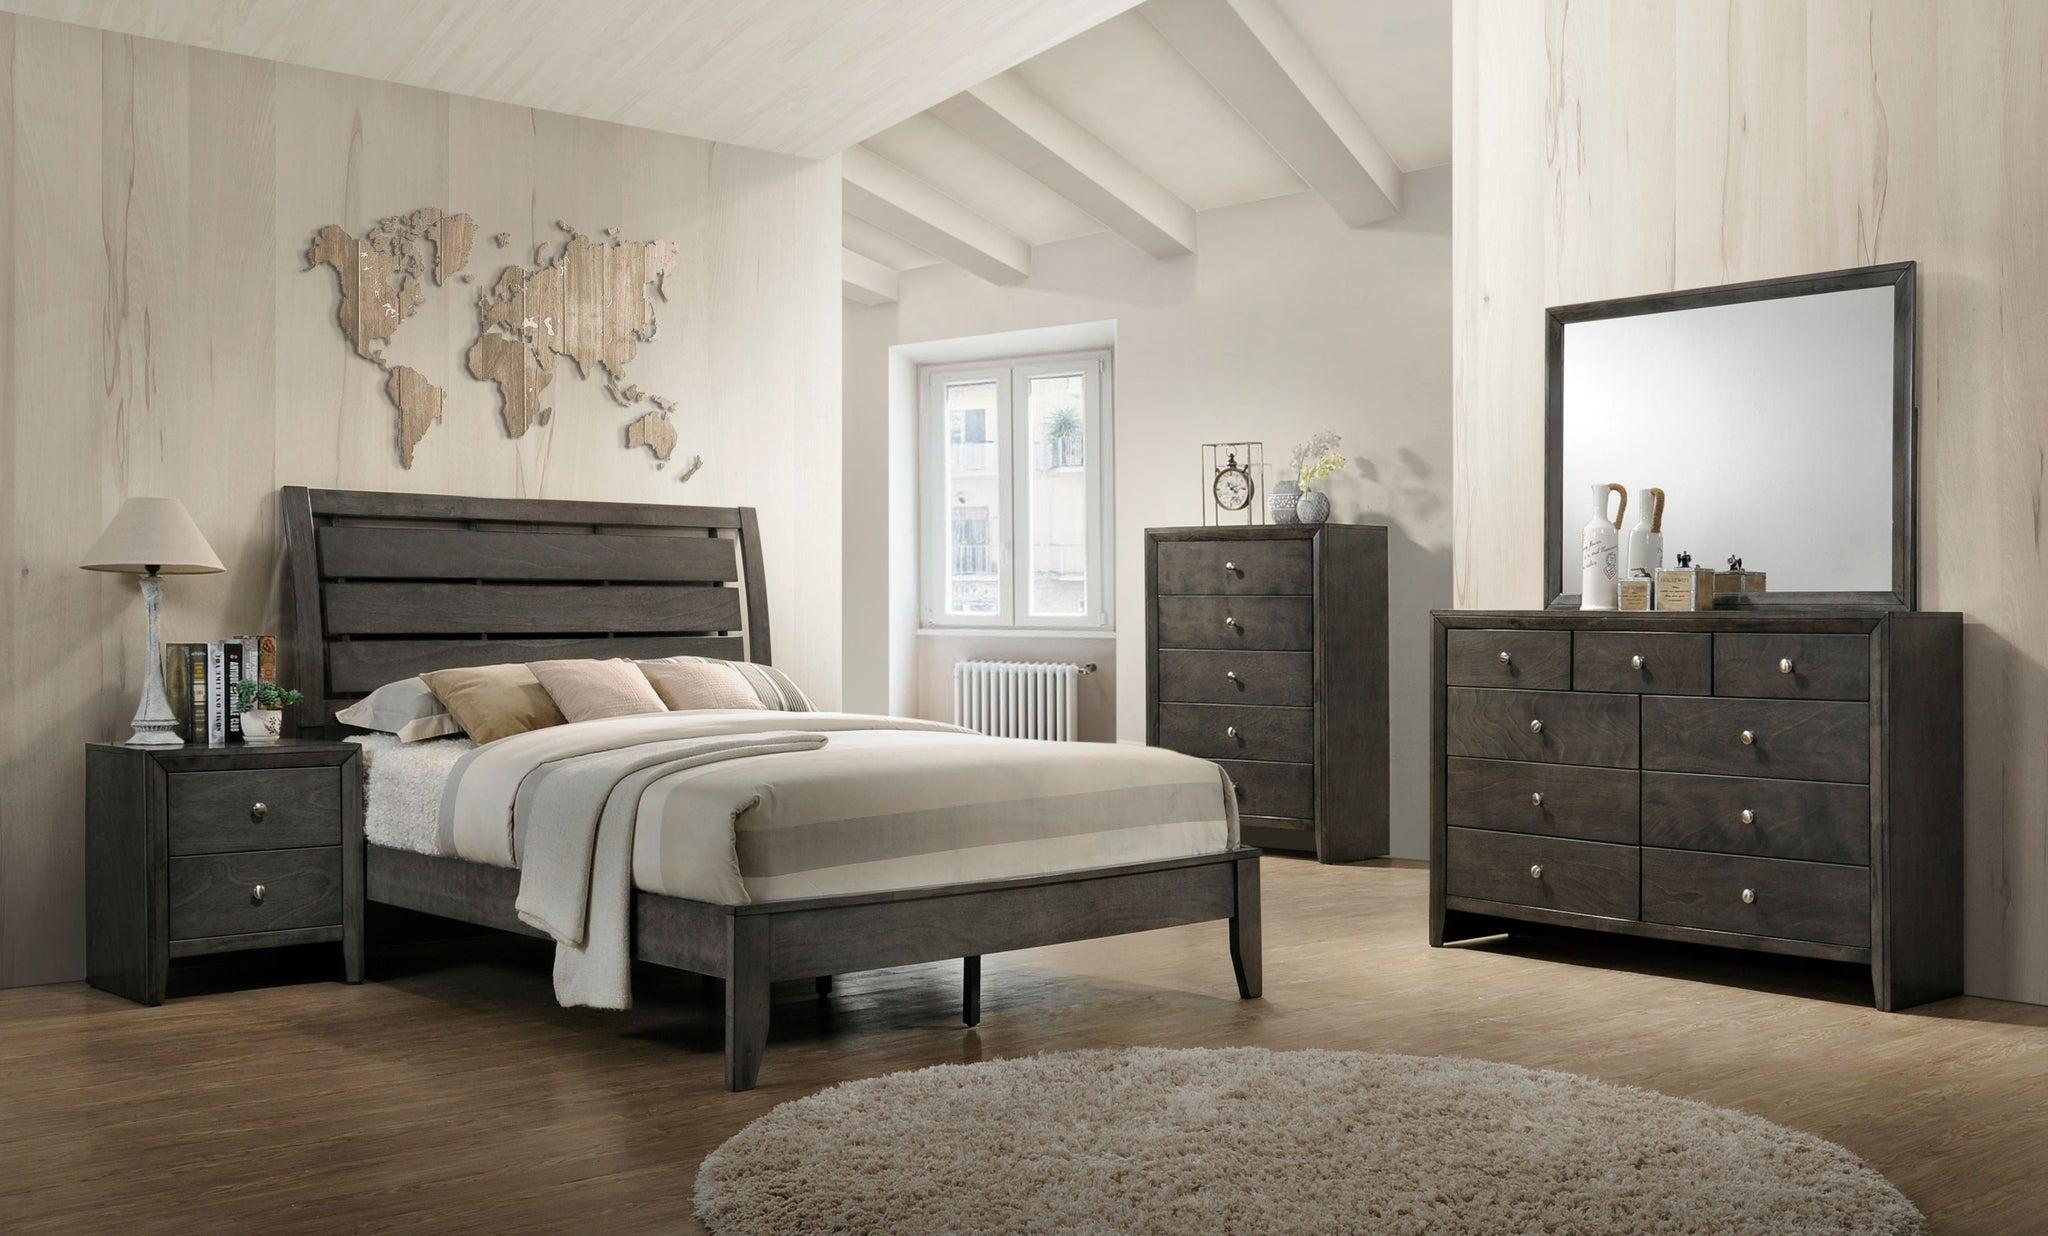 

    
Contemporary Gray Queen Bed Set 3PCS by Acme Ilana 28470Q-3pcs
